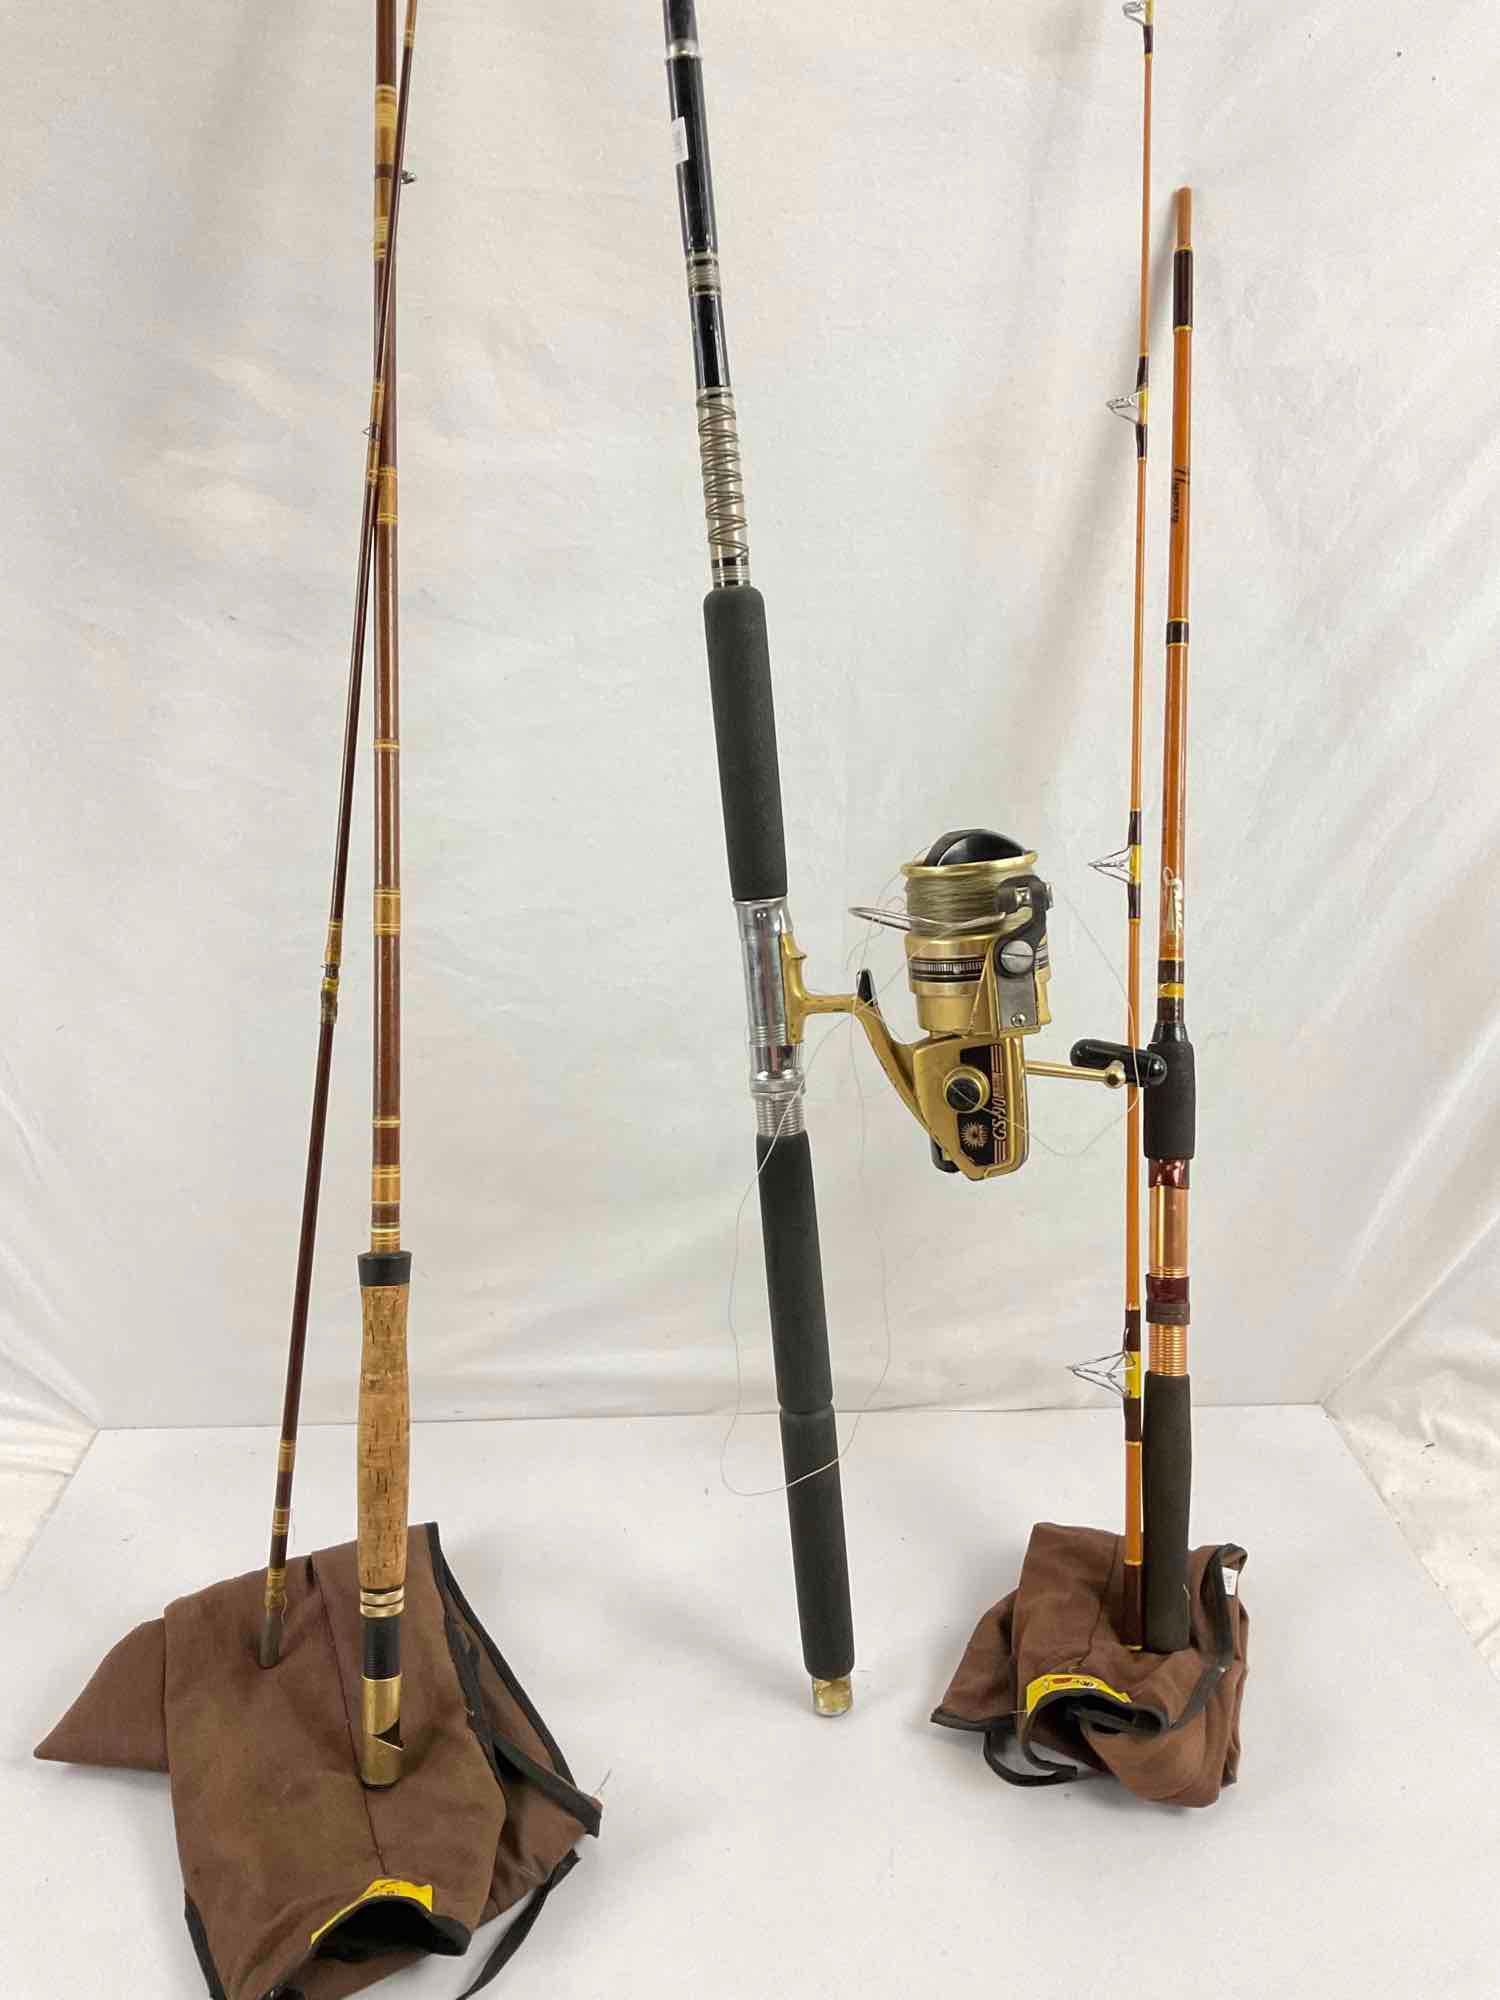 Vintage fishing rods / reels